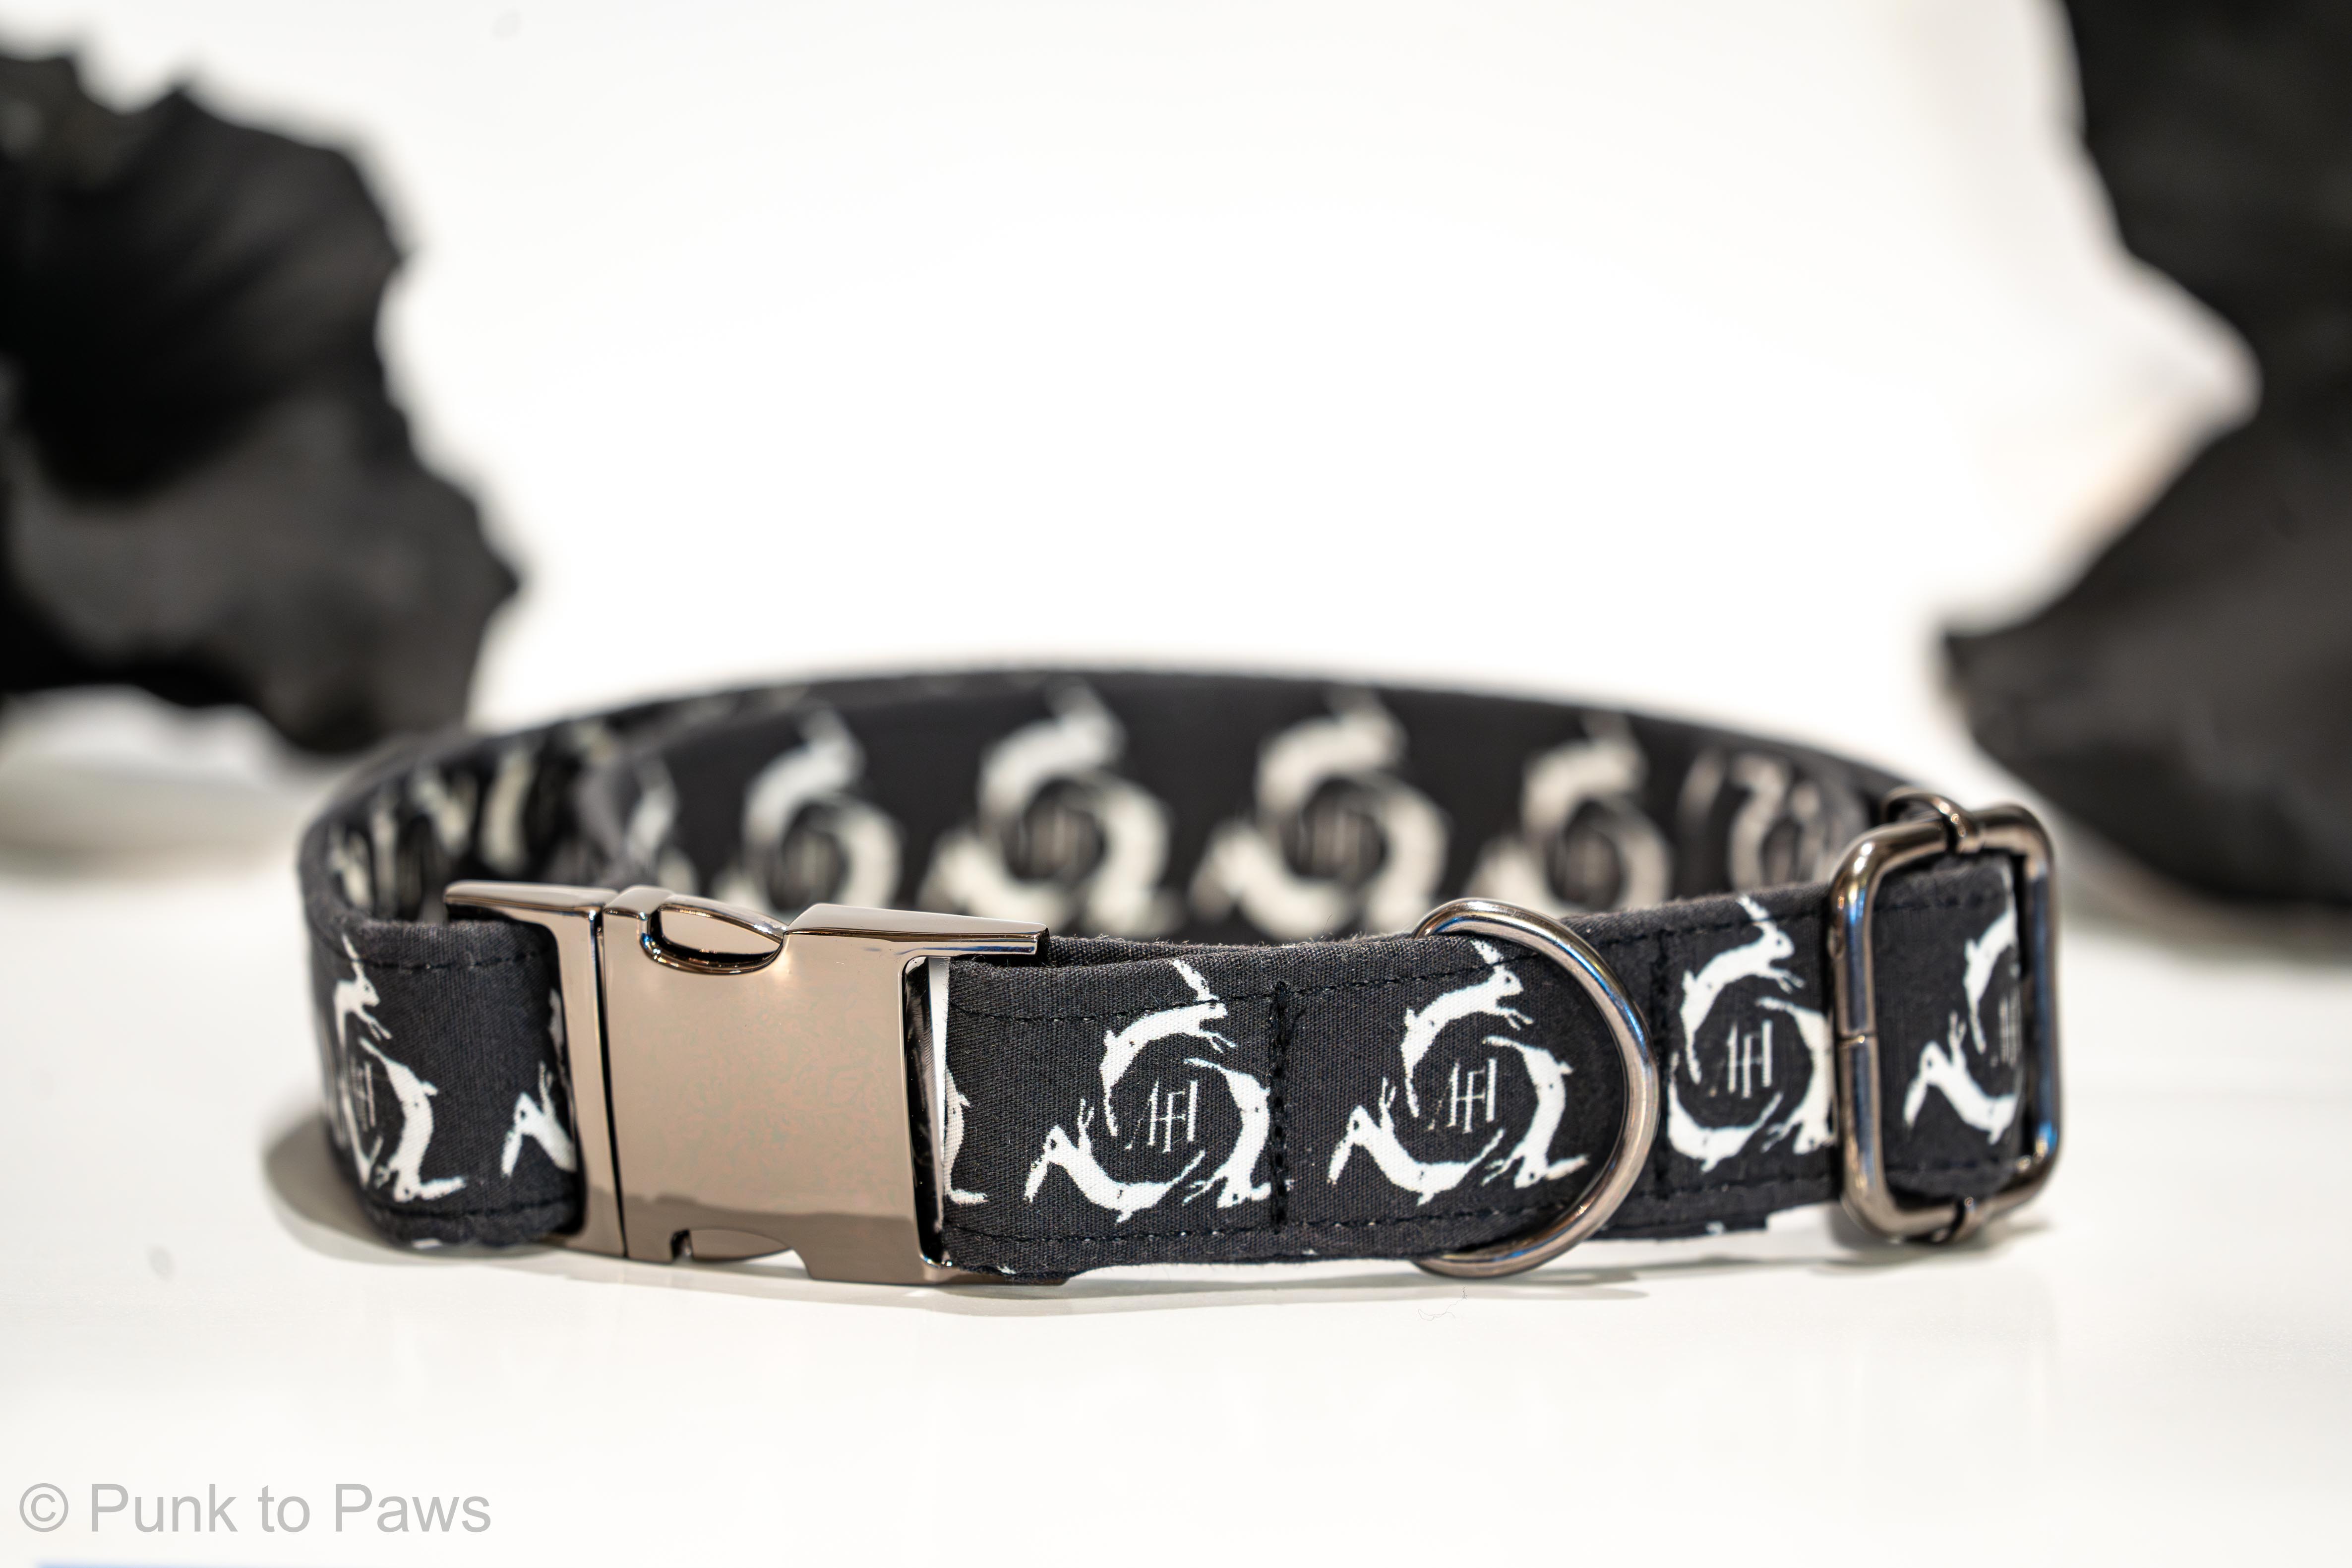 AFI Dog Collar – Punk to Paws